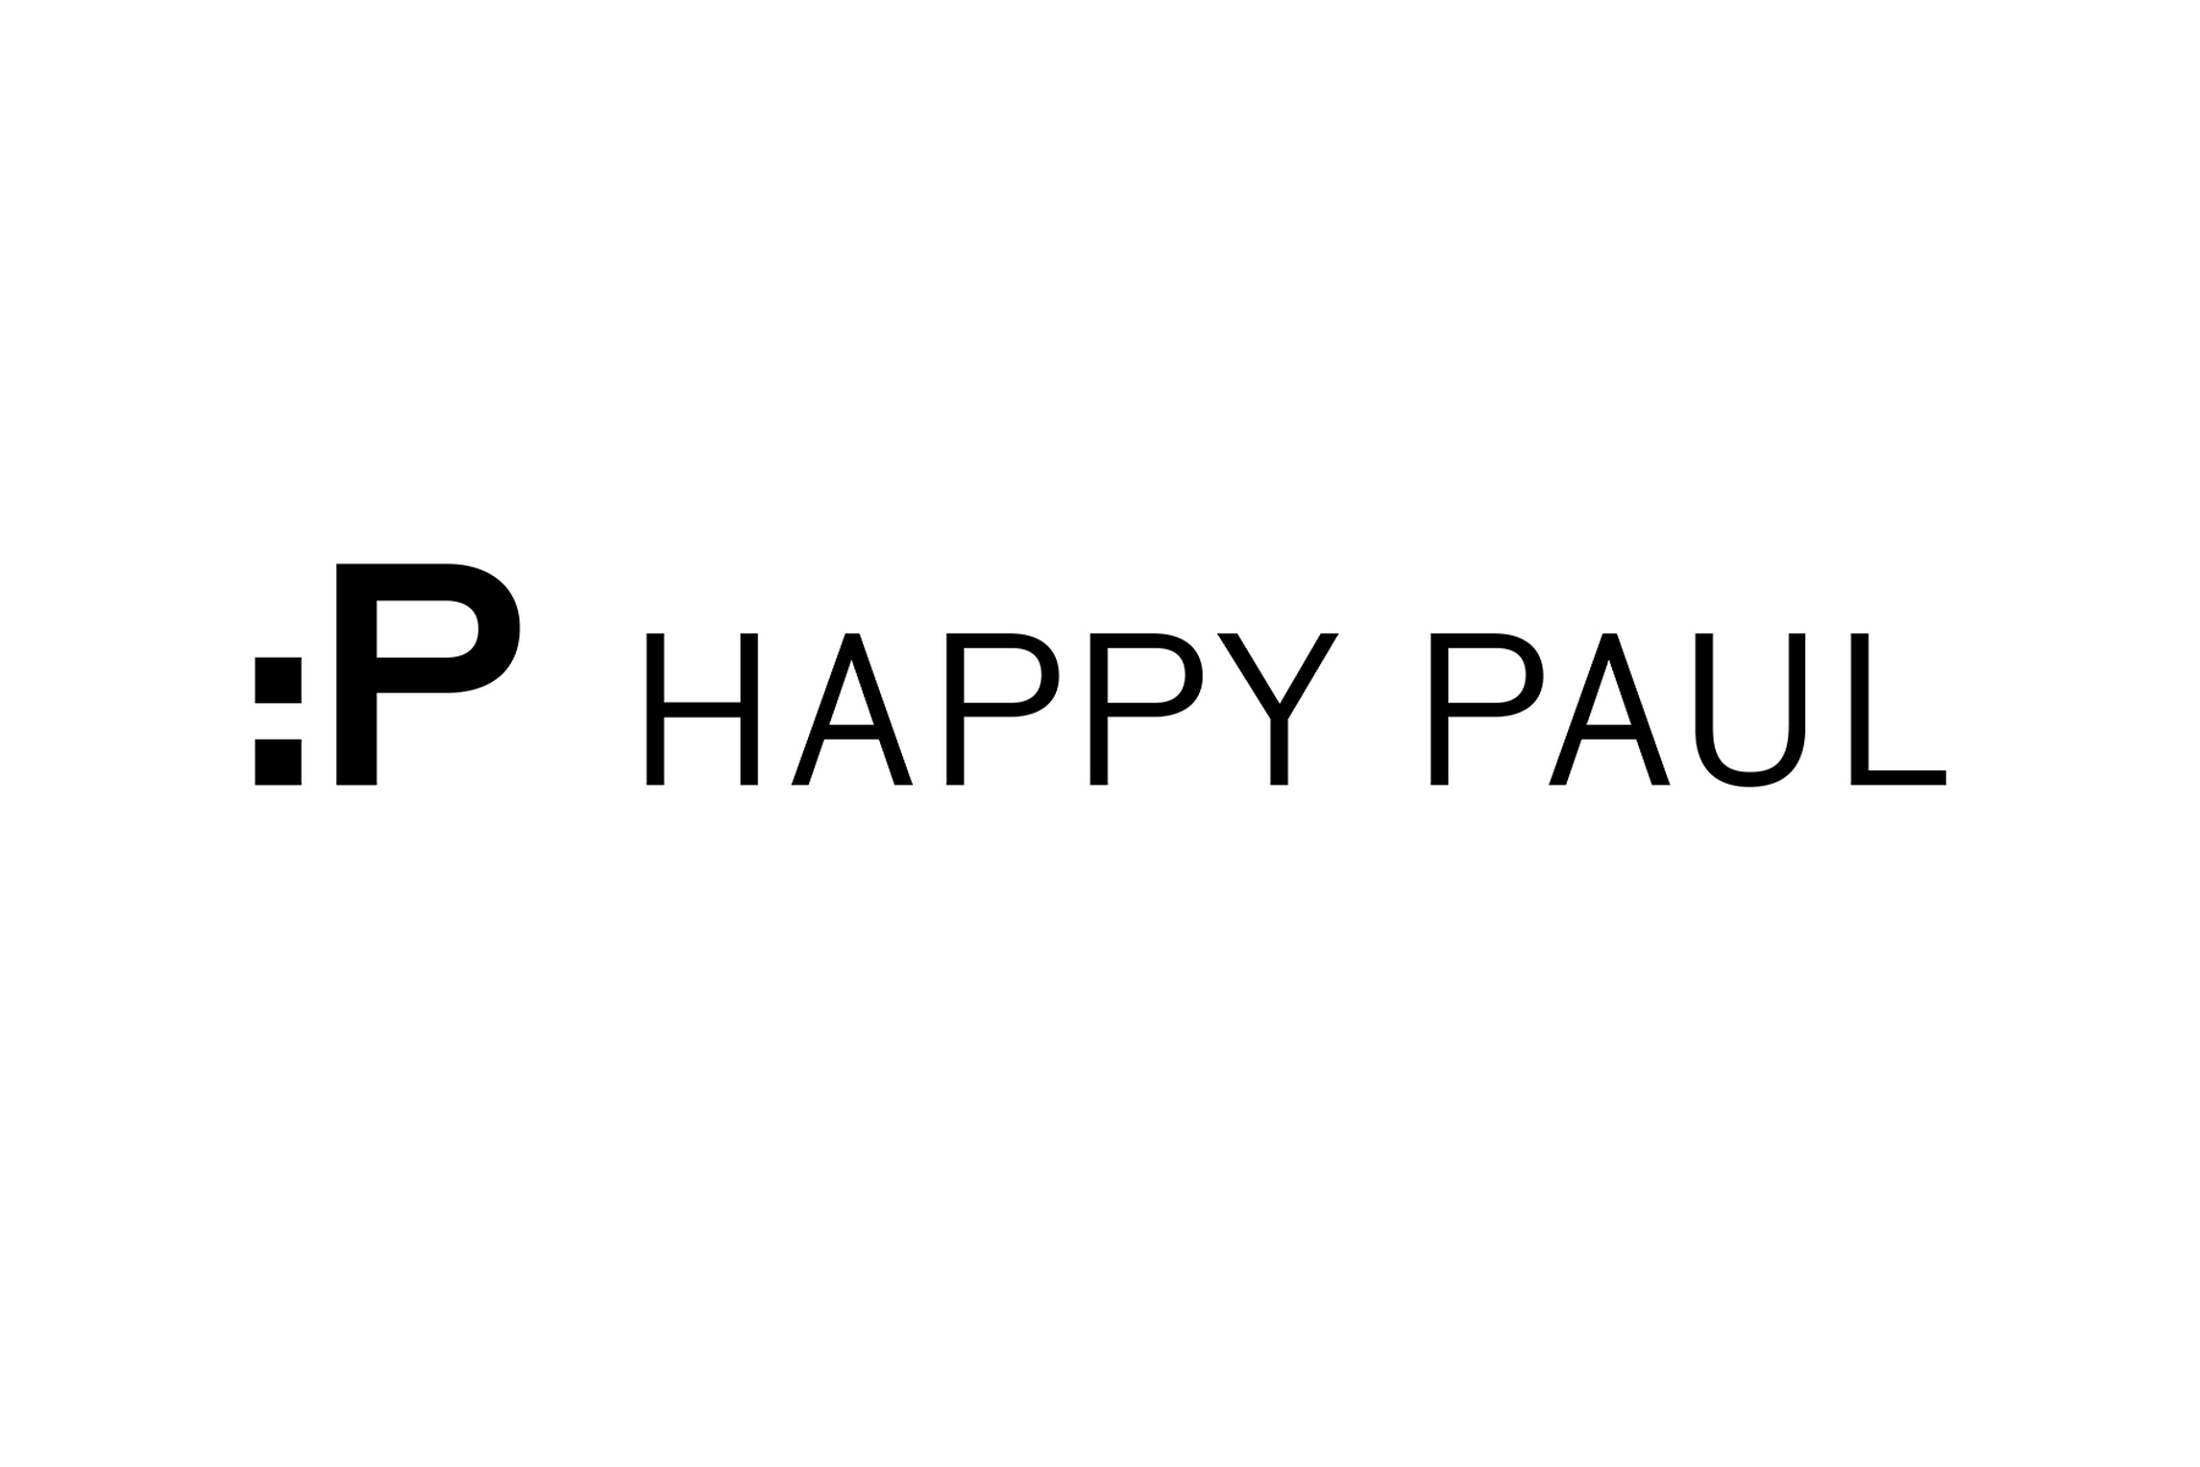 paul_belford_ltd_happy_paul_wordmark.png